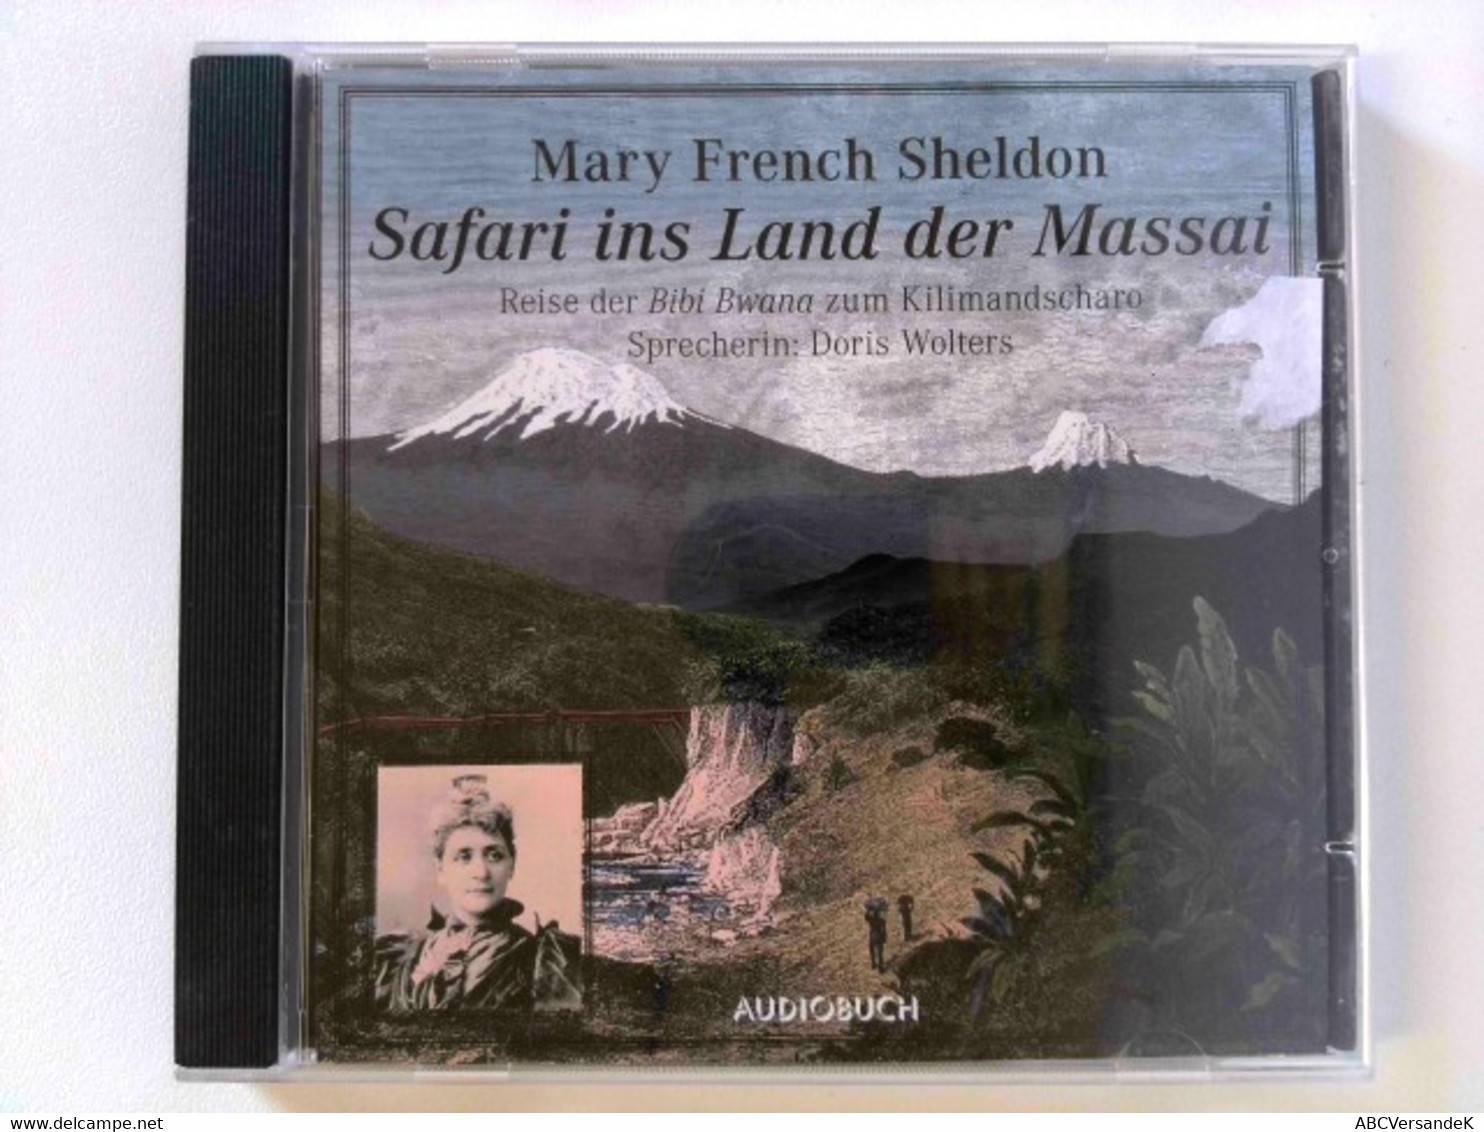 Safari Ins Land Der Massai. Reise Der Bibi Bwana Zum Kilimandscharo - CD